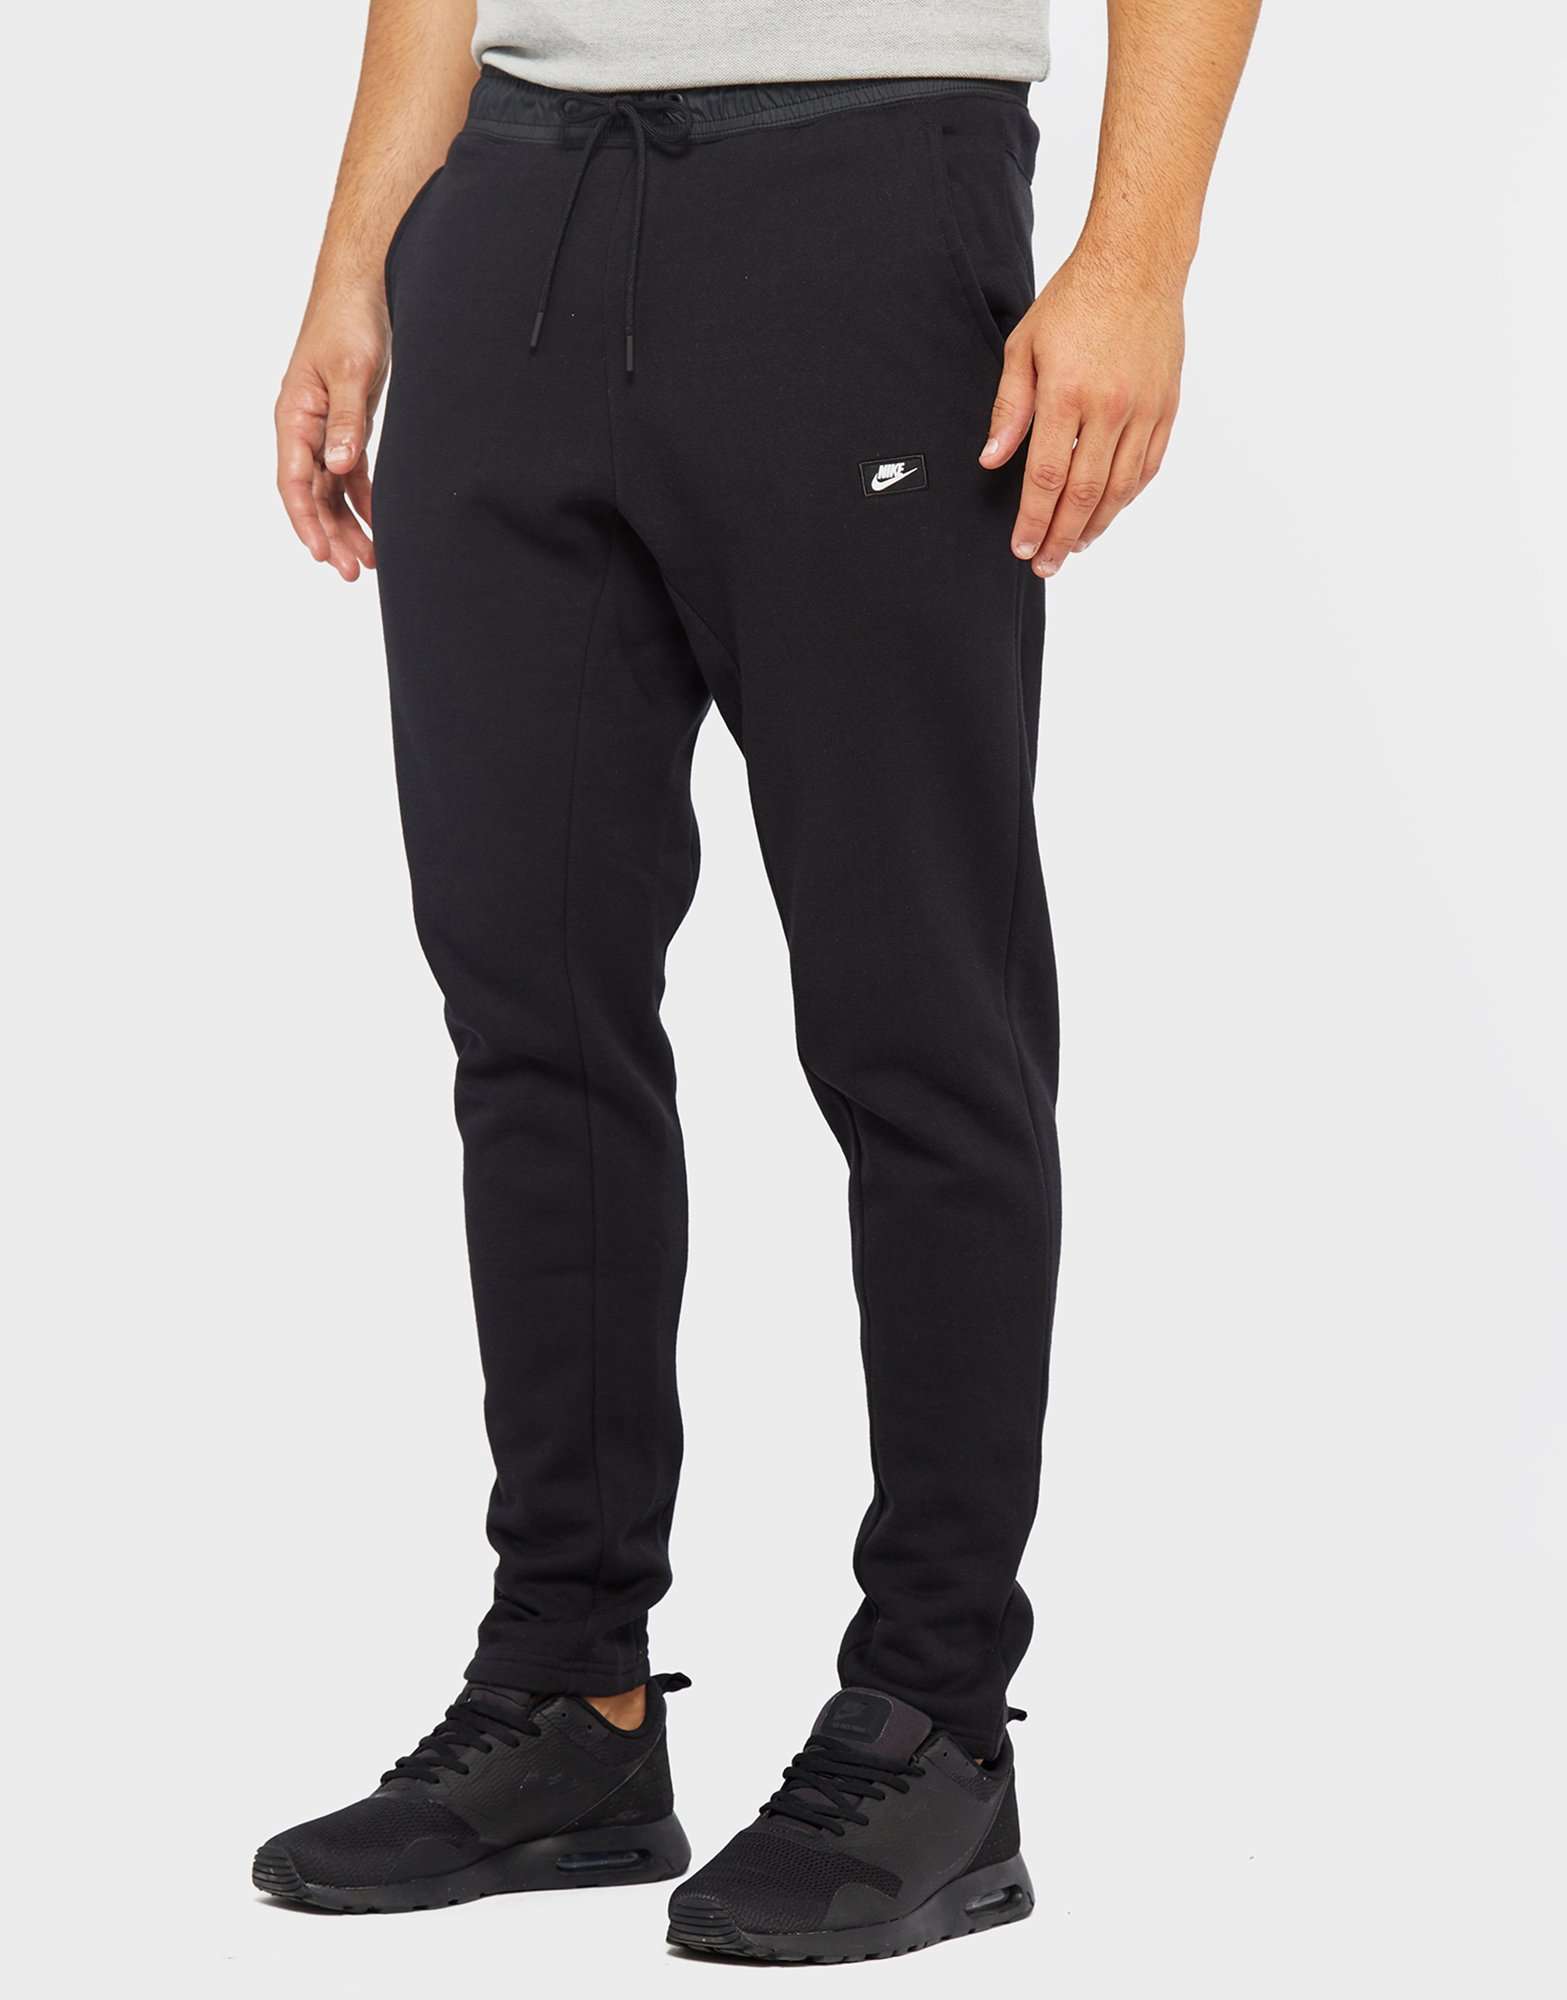 Nike Ess Slim Cuff Pant | scotts Menswear